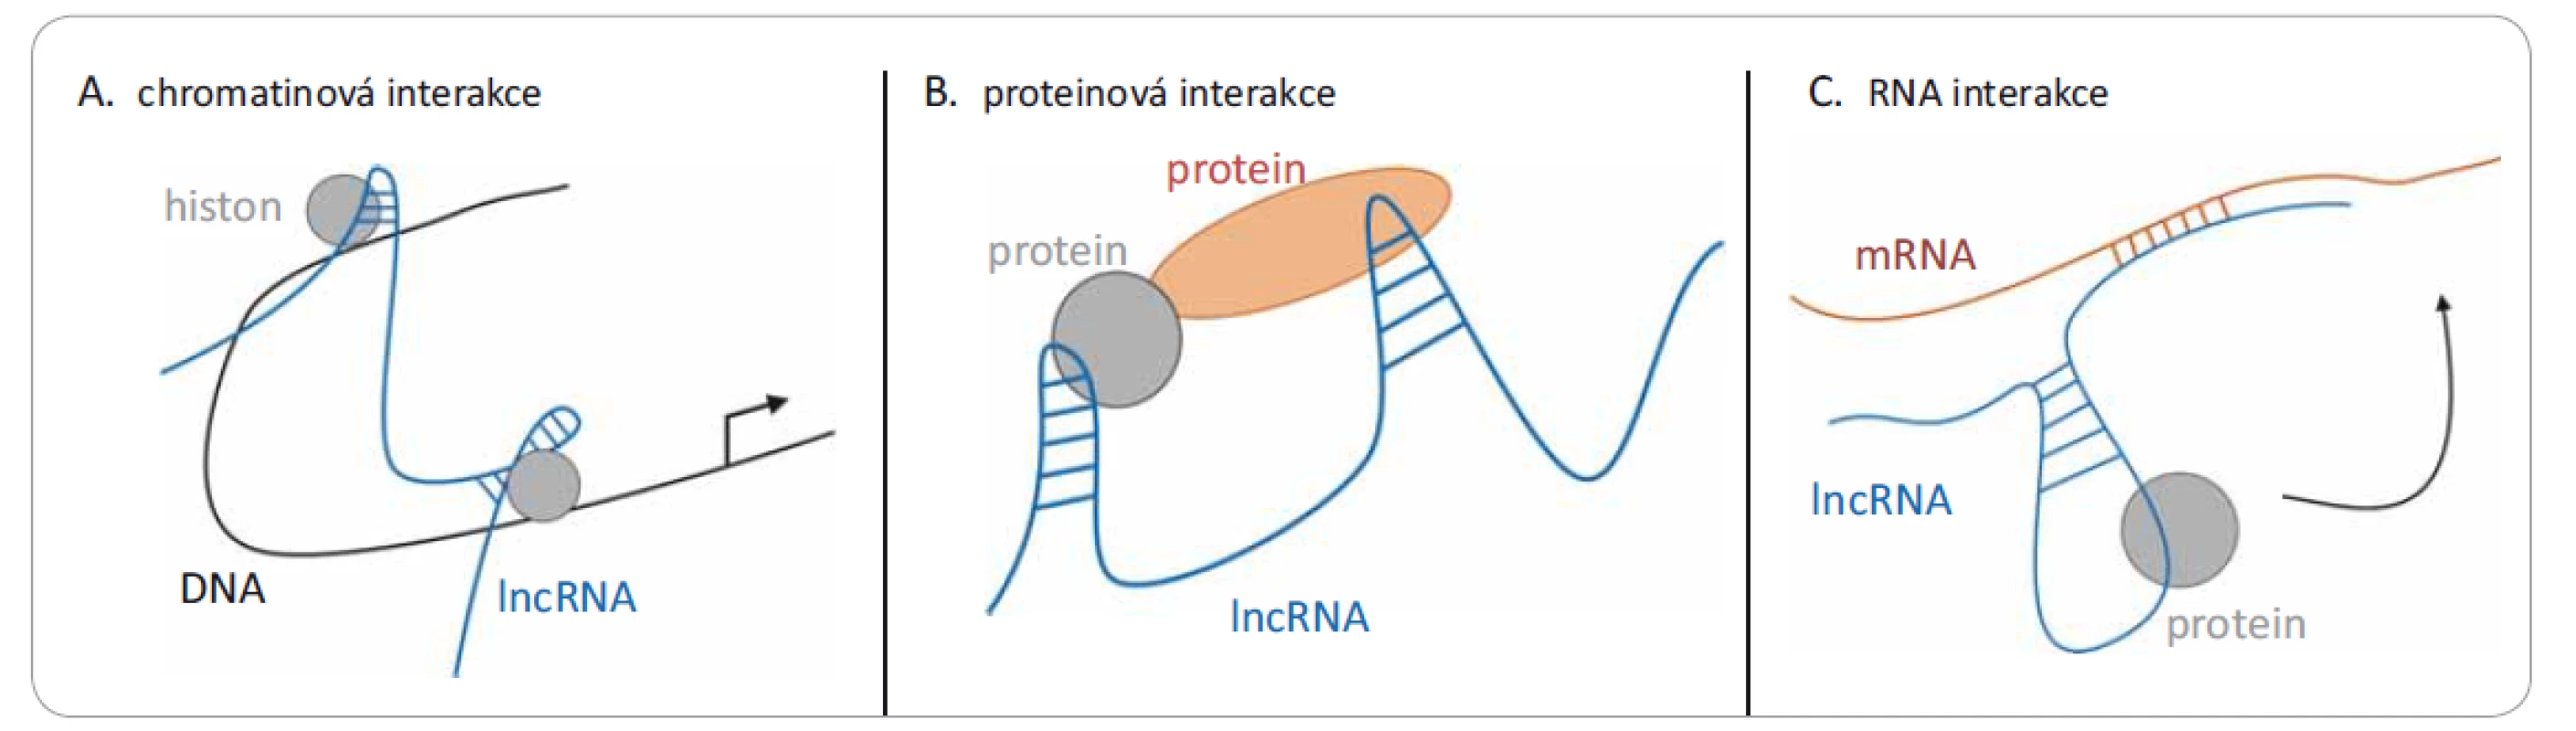 Tři různé mechanizmy působení lncRNA. Jedná se o interakce s: A) chromatinem (DNA), kdy dochází k remodelaci chromatinu
po vazbě lncRNA; B) různými proteiny, kde lncRNA může modulovat protein-proteinové interakce; nebo C) mRNA, kde dochází
k narušení translace.